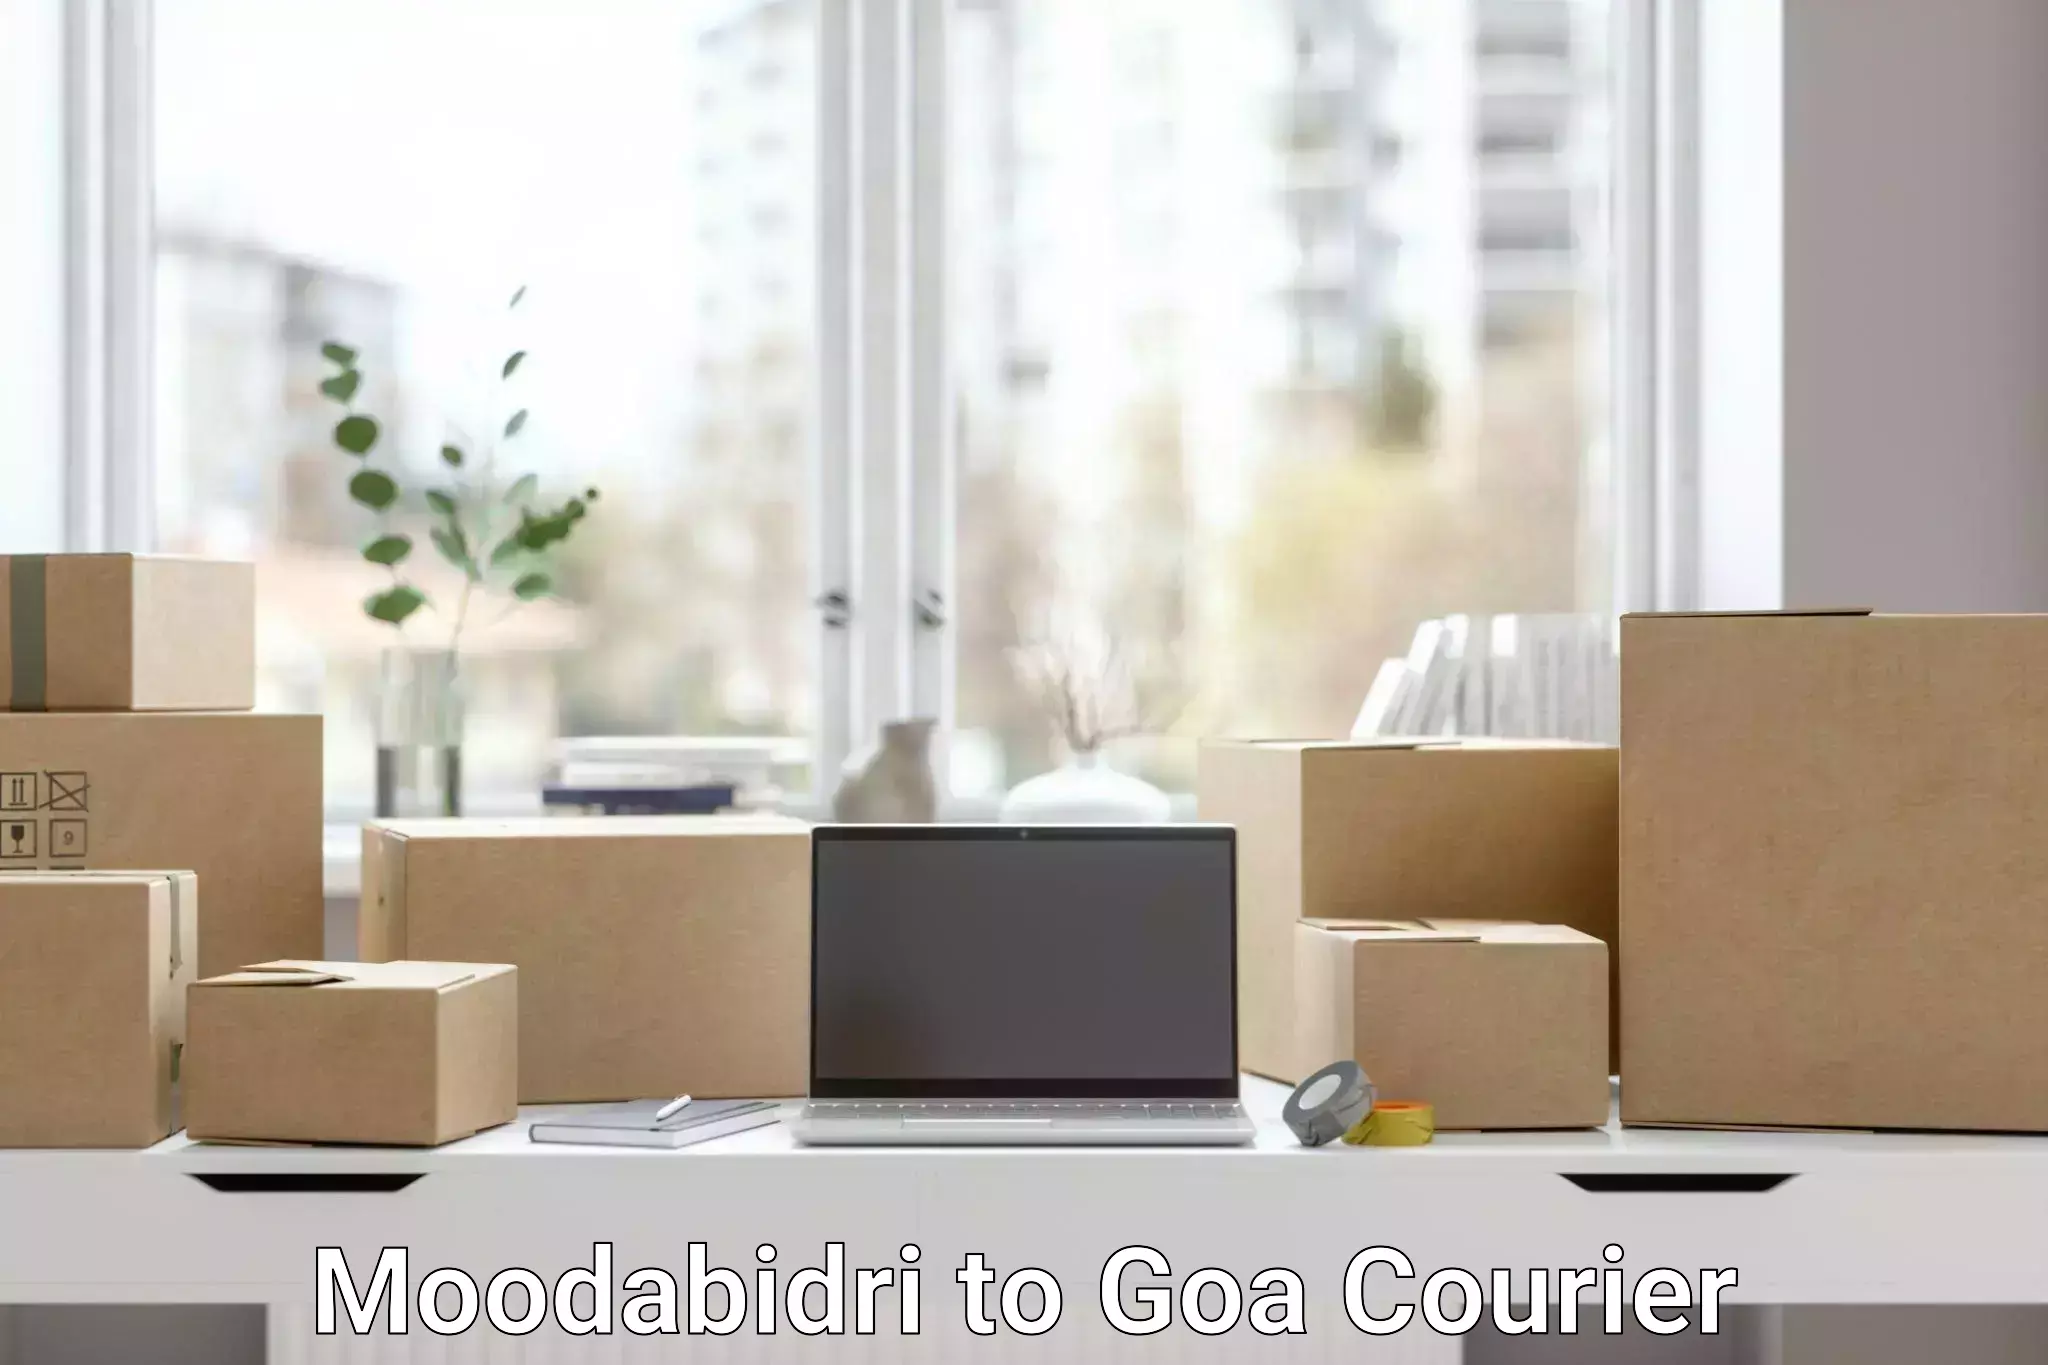 Customized shipping options in Moodabidri to Panaji